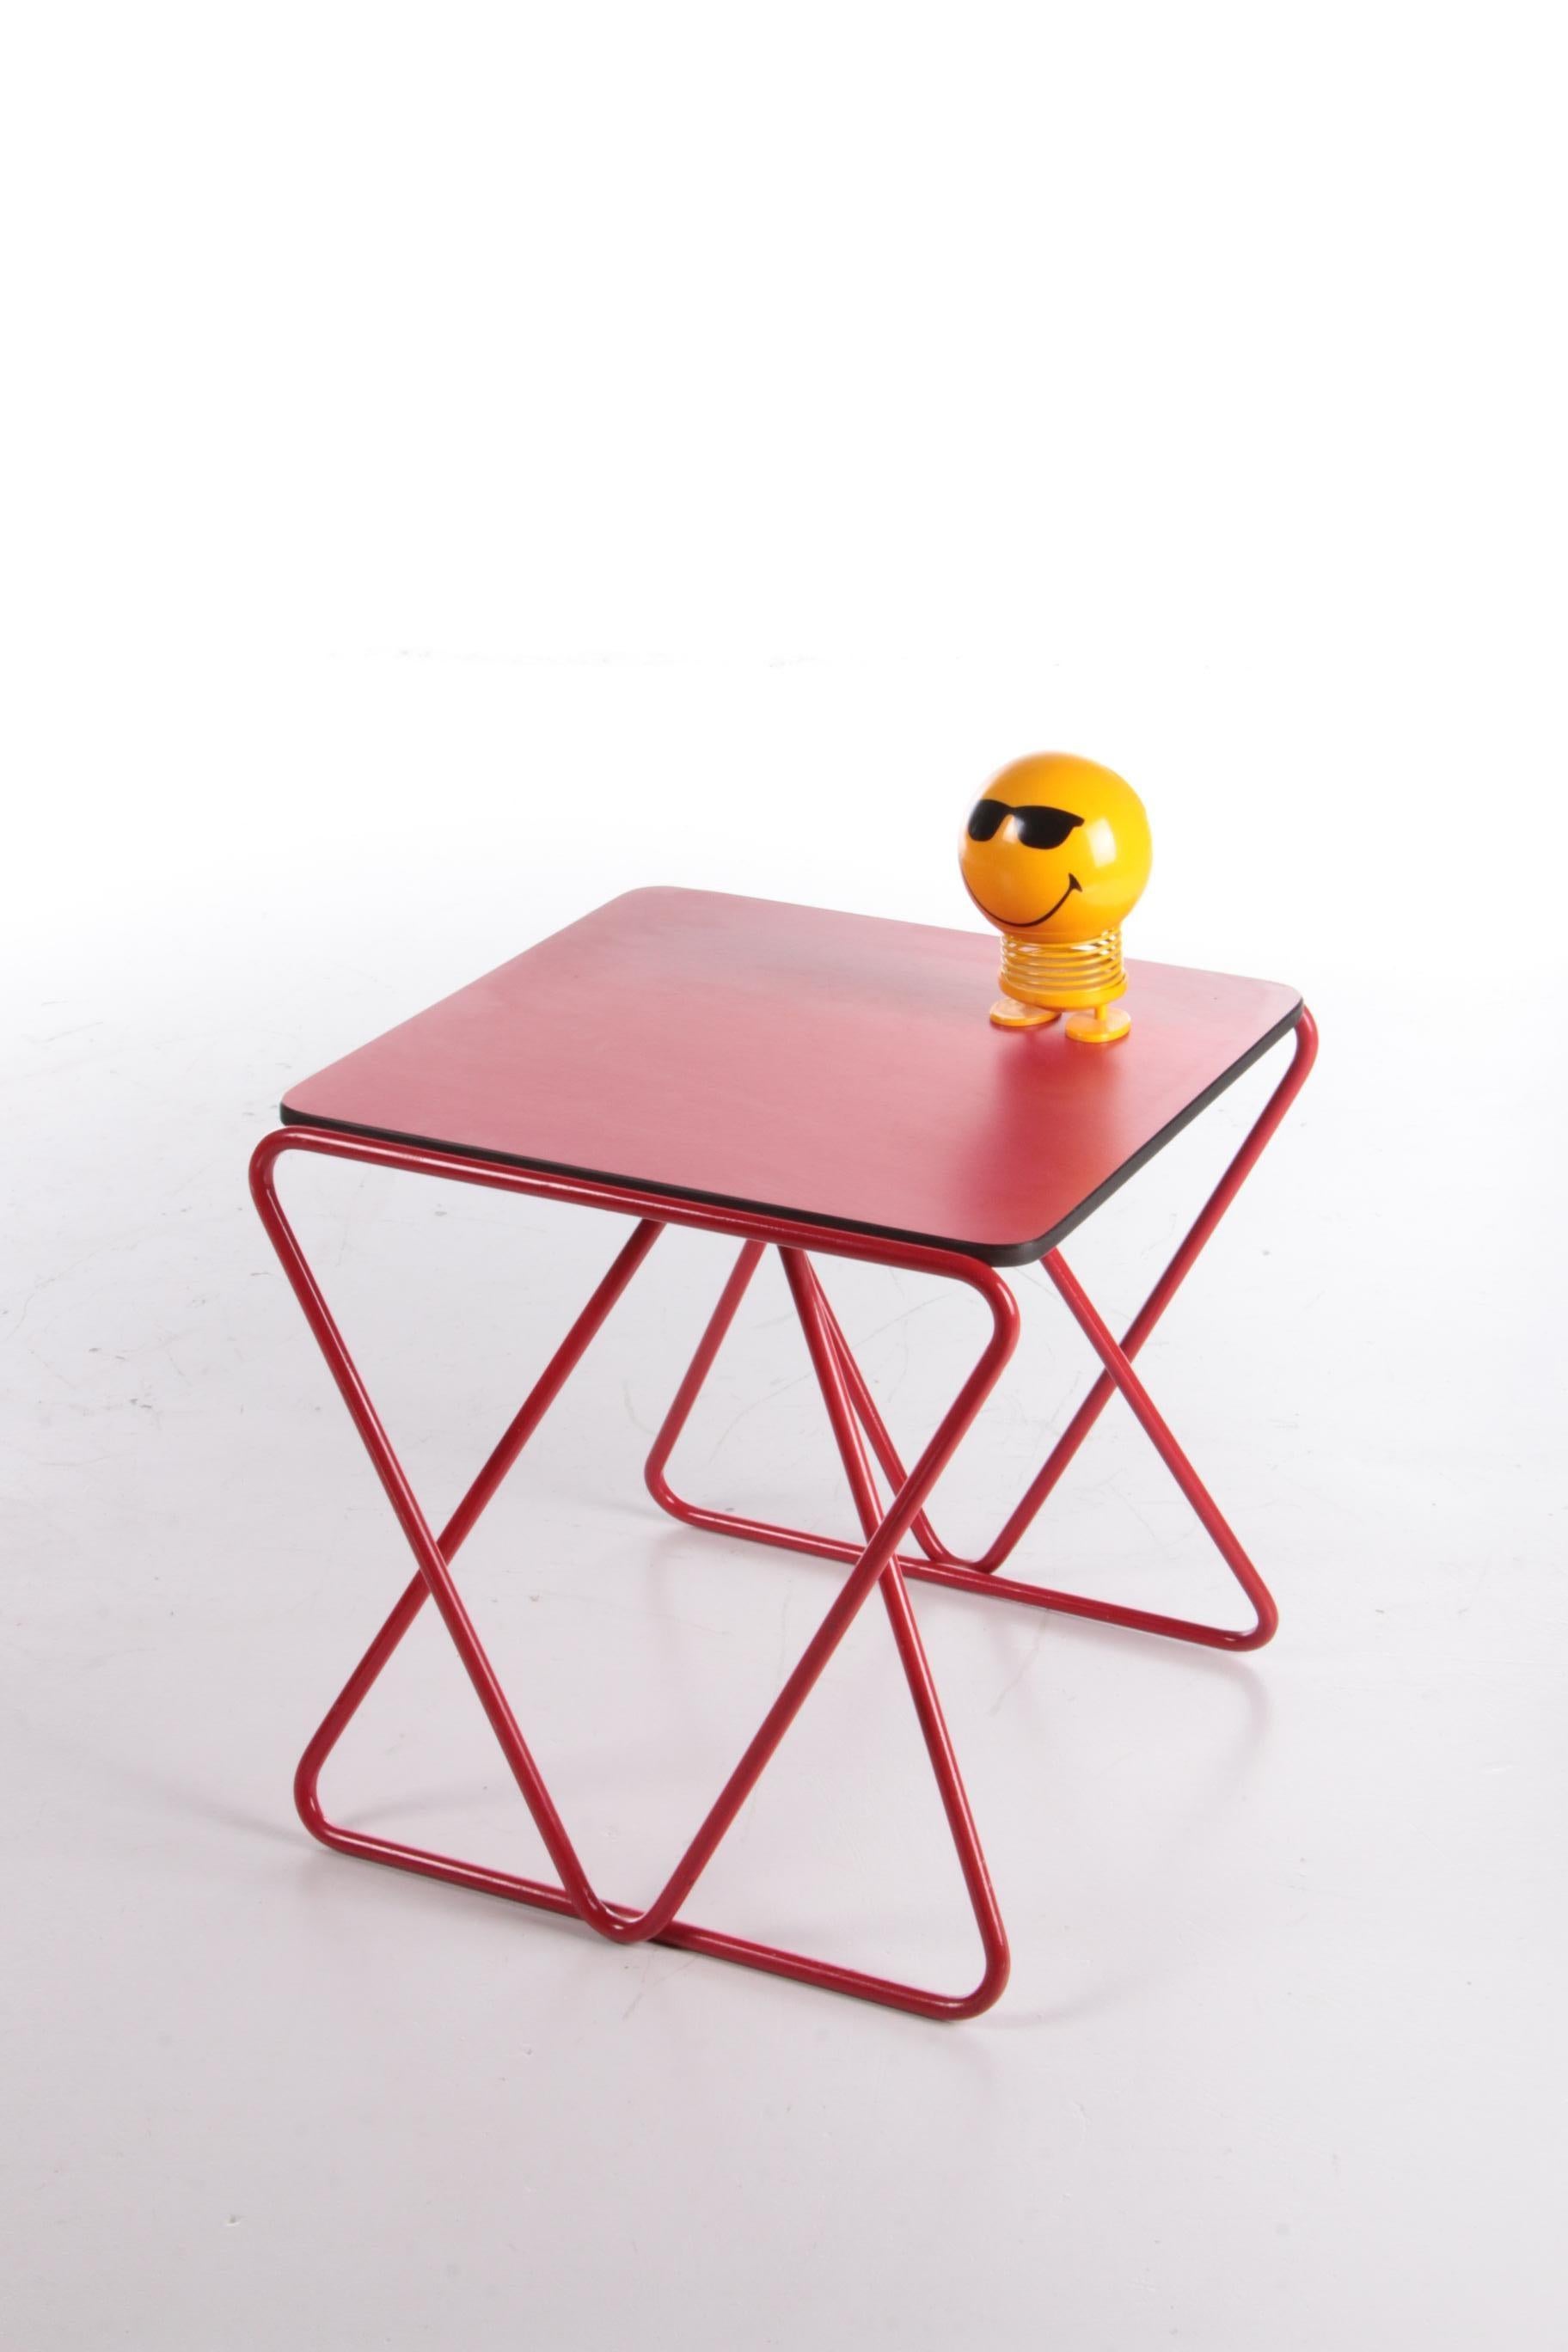 Seltener Beistelltisch, entworfen von Walter Antonis für I-Form, Holland, 1978.

Dieser Tisch war einer der letzten Entwürfe von Walter Antonis, als er nach seinem Ausscheiden aus 't Spectrum sein eigenes Unternehmen I-Form gründete.

Es wurden